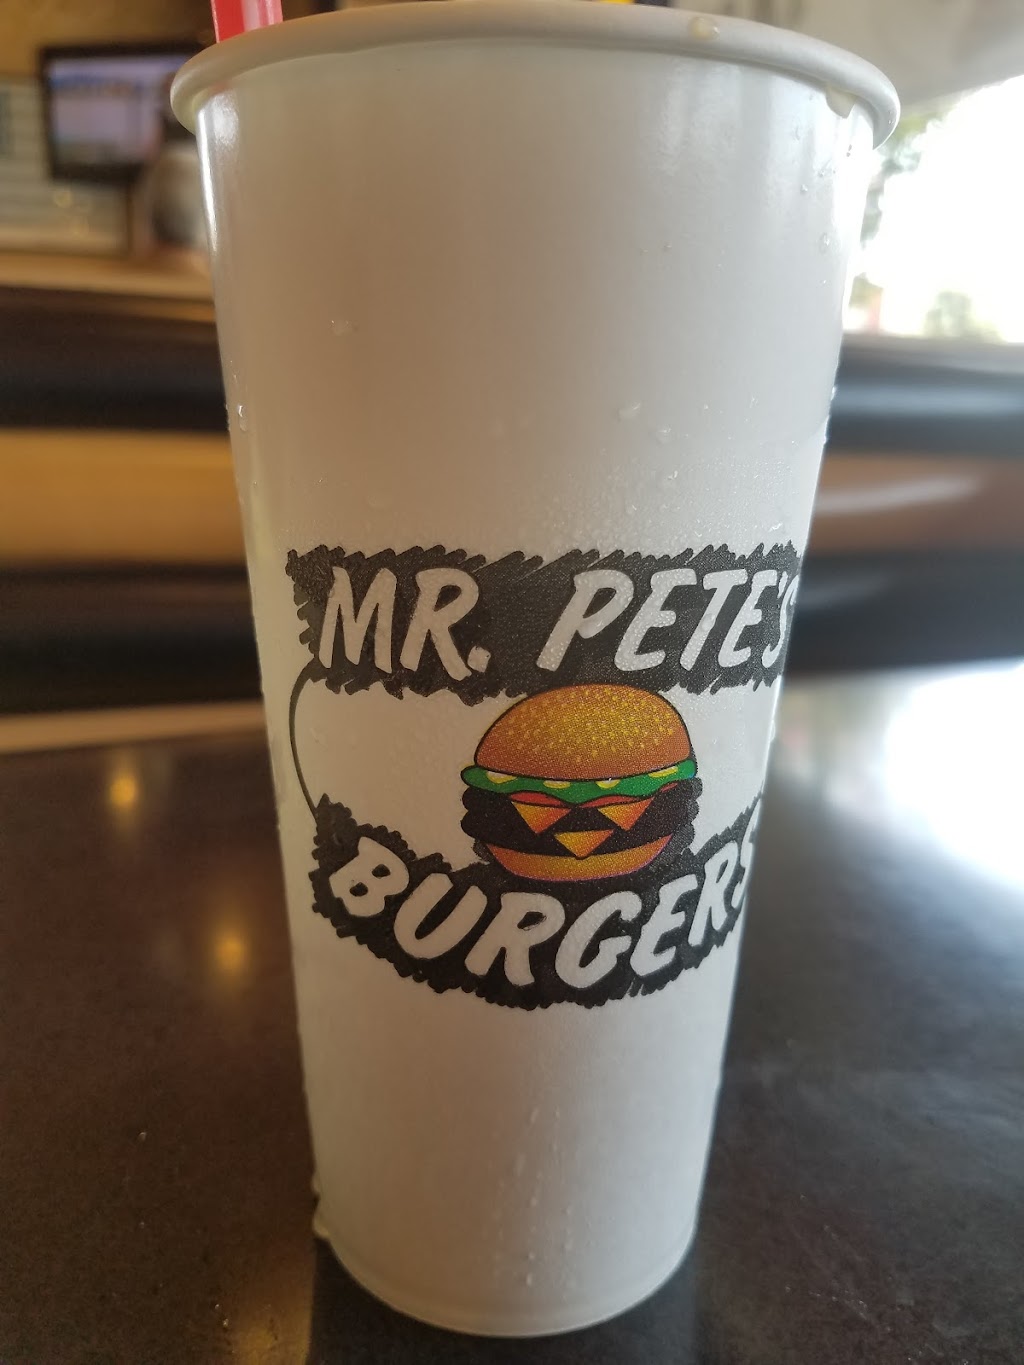 Petes Burgers | 4100 Orange Ave, Long Beach, CA 90807 | Phone: (562) 492-1350